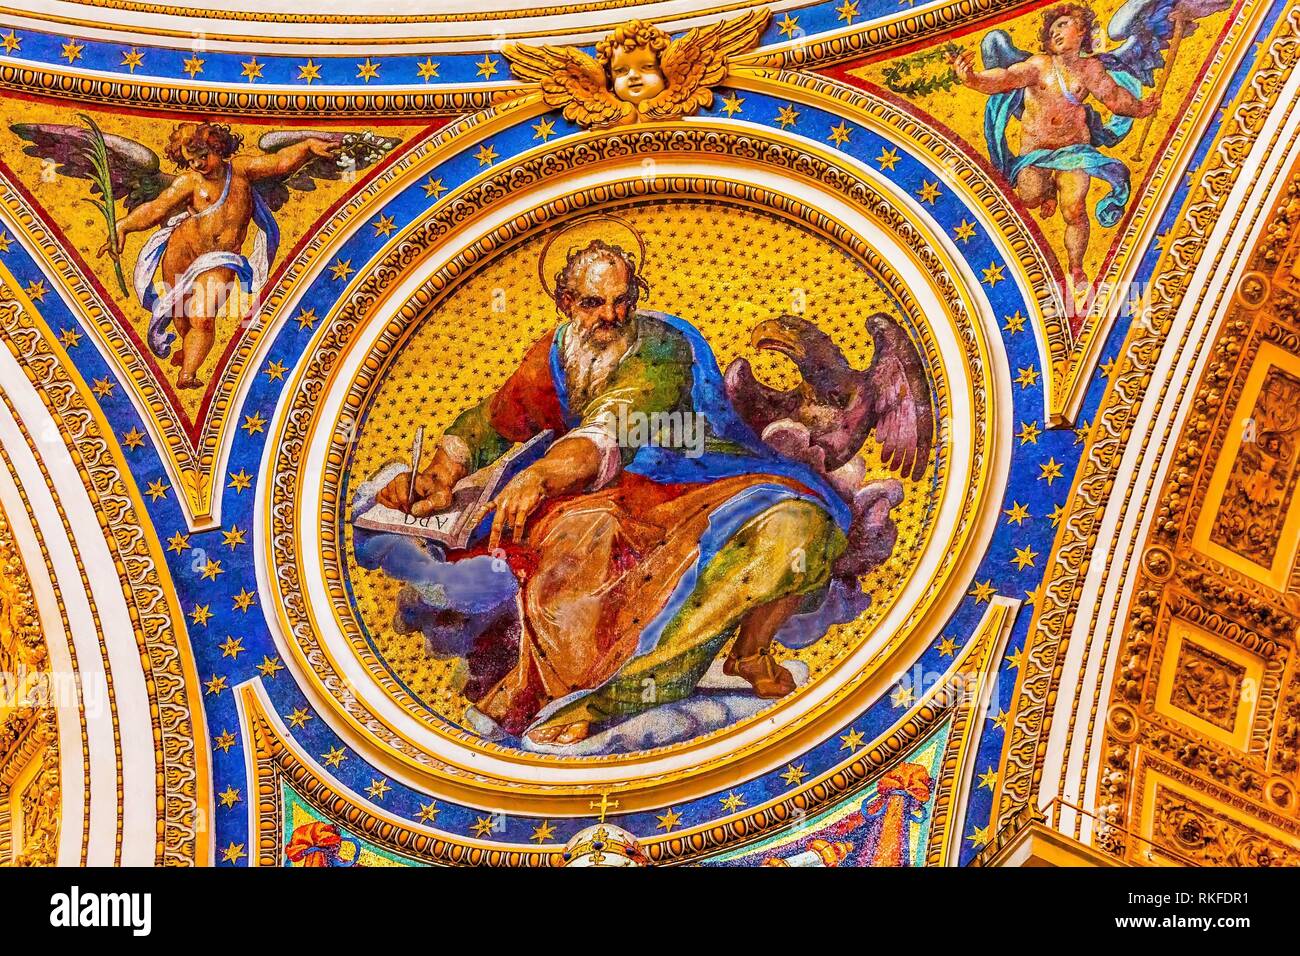 Eagle saint Marc évangéliste a évangéliste anges en mosaïque de la Basilique Saint-Pierre Vatican Rome Italie. Juste en dessous de la mosaïque le Dome de Michel-Ange, créé Banque D'Images